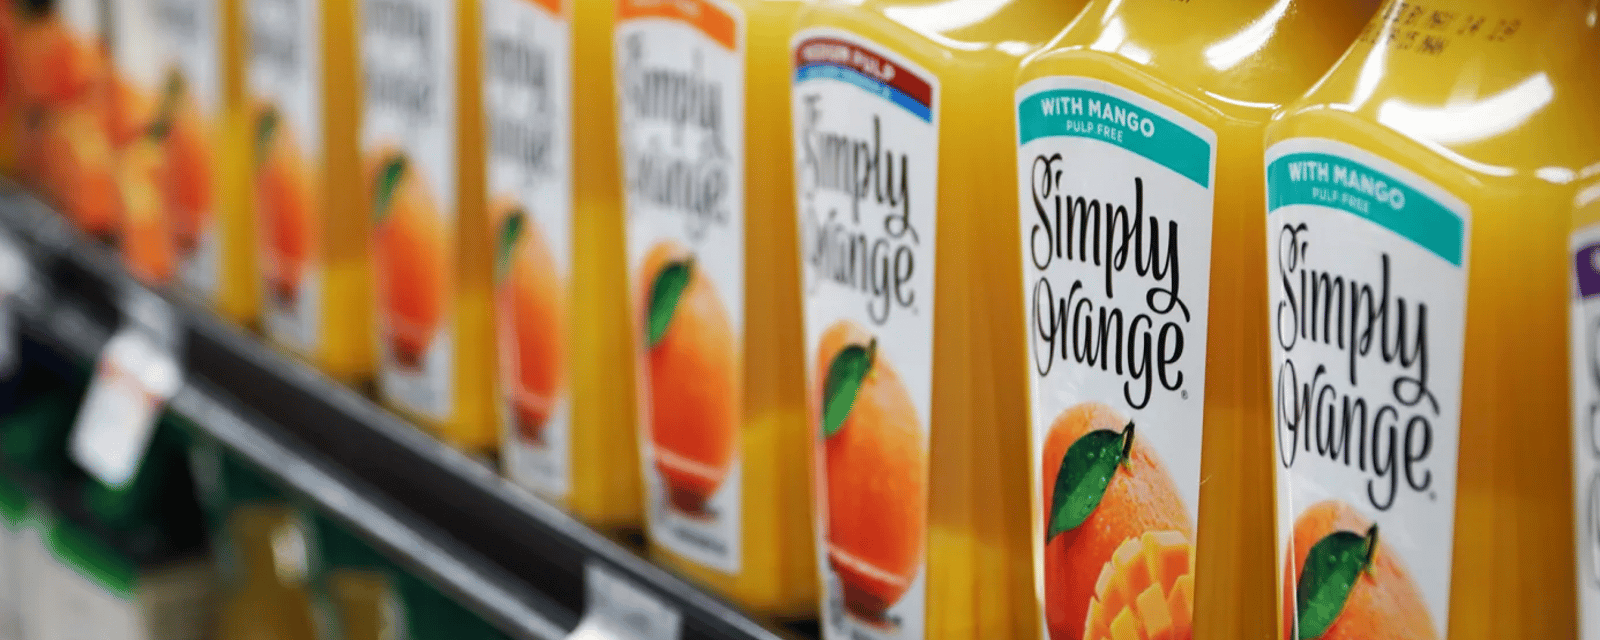 Un jus d'orange adoré des Québécois traîné en cour puisqu'il contiendrait des produits chimiques éternels